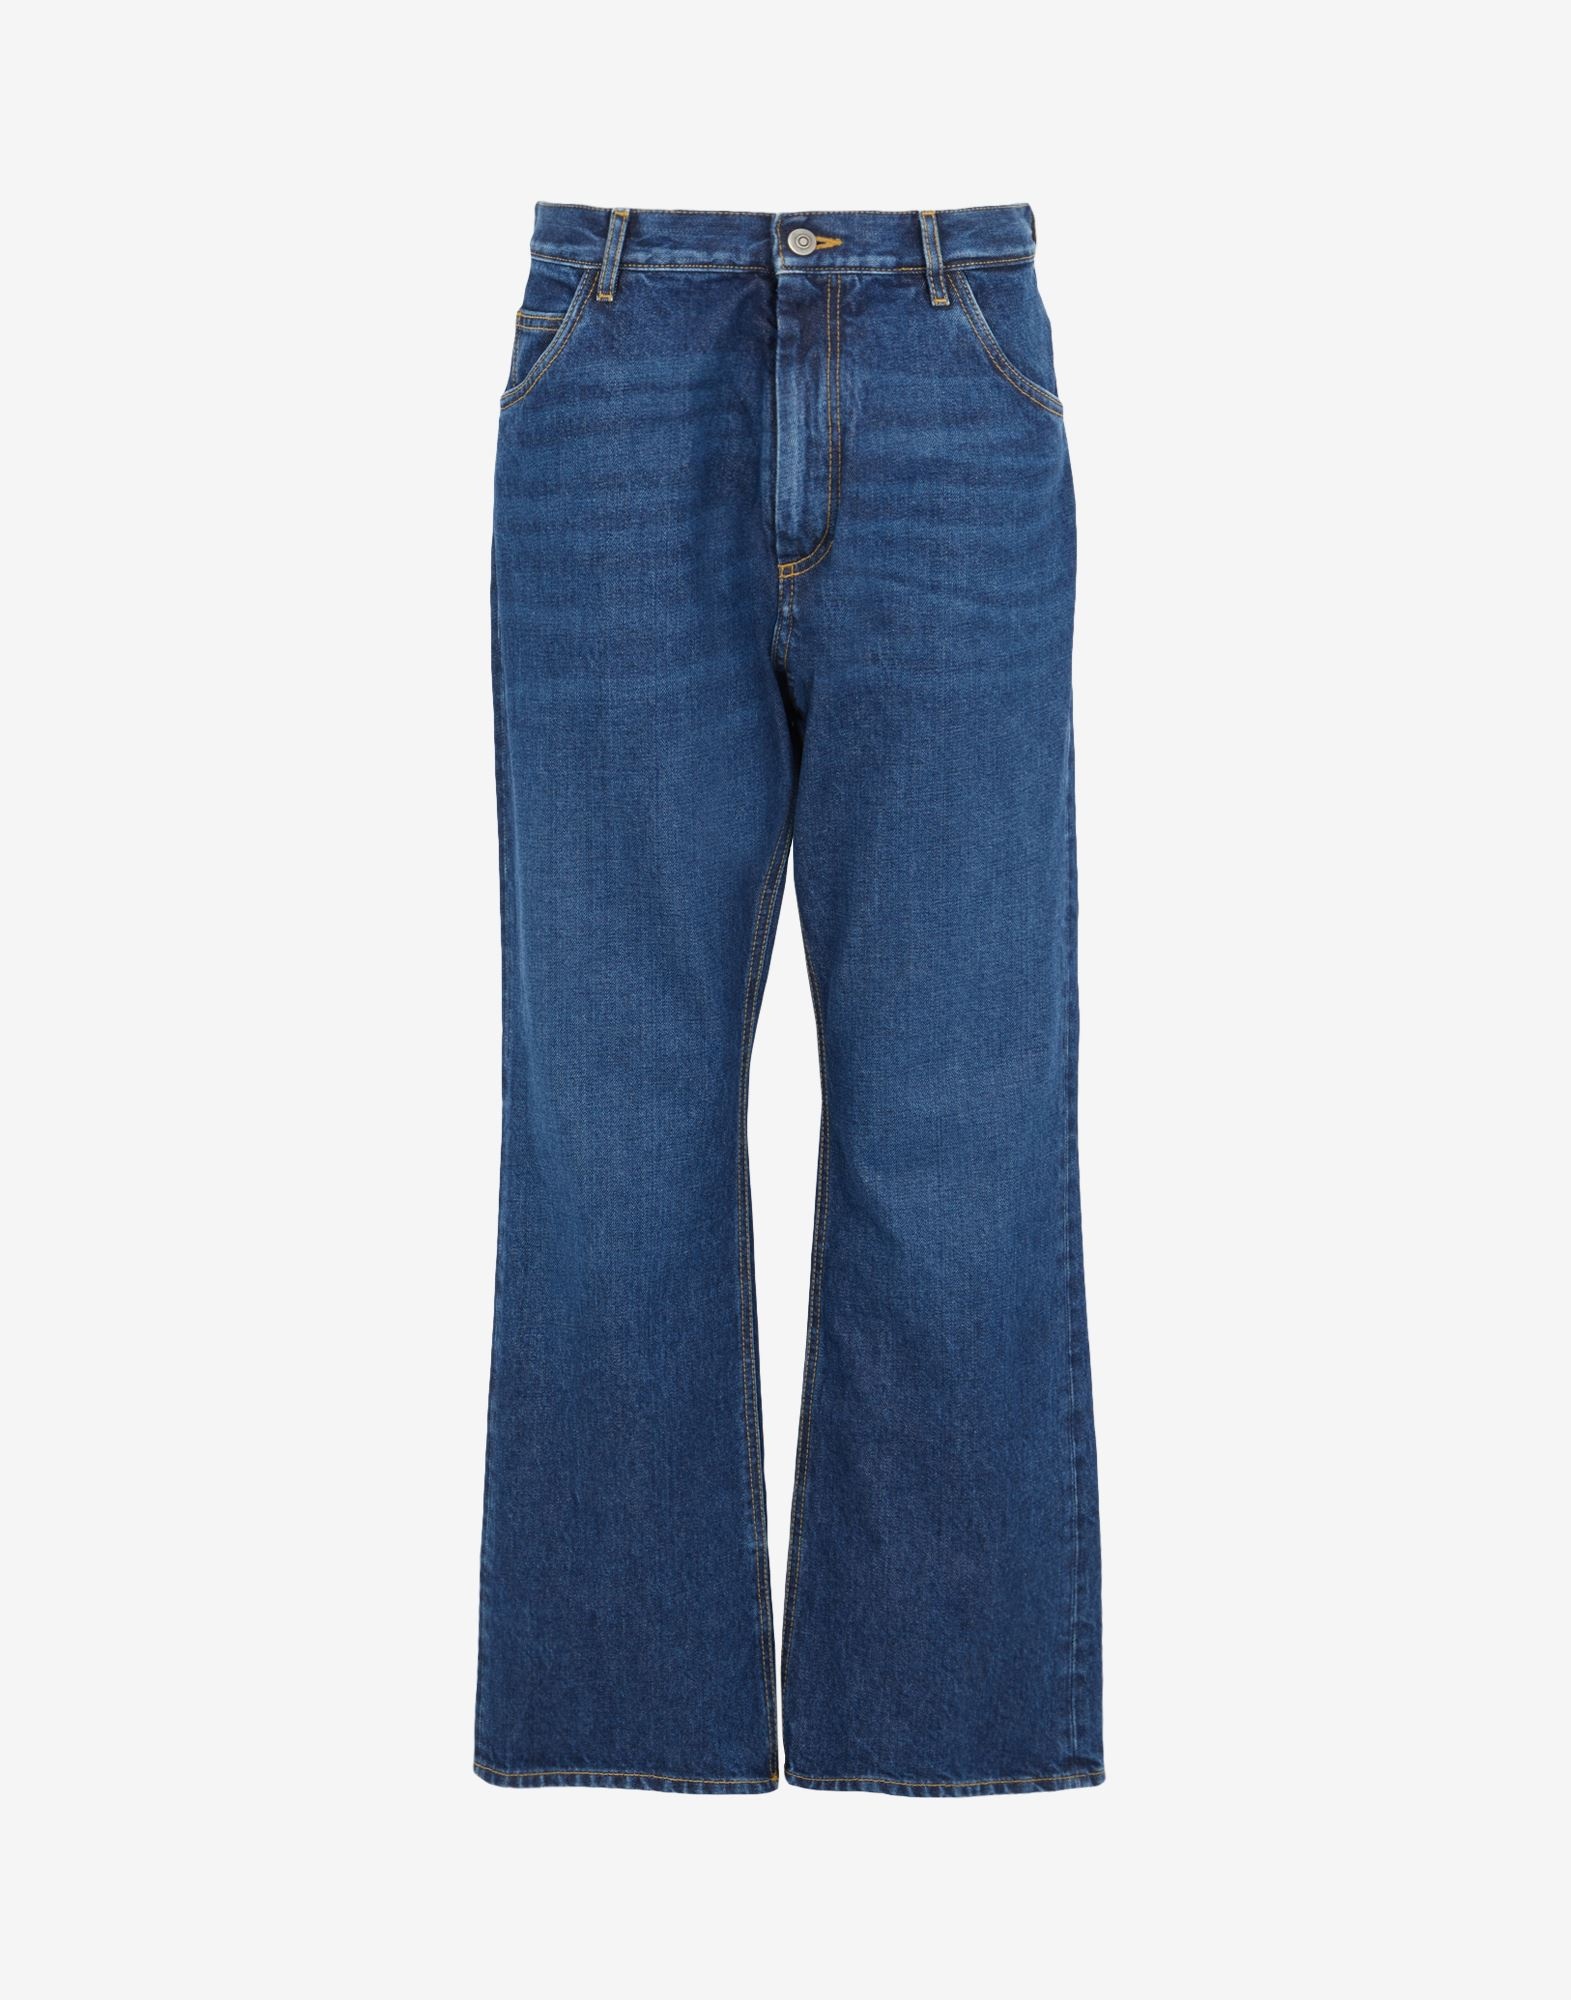 5 pocket jeans - 1